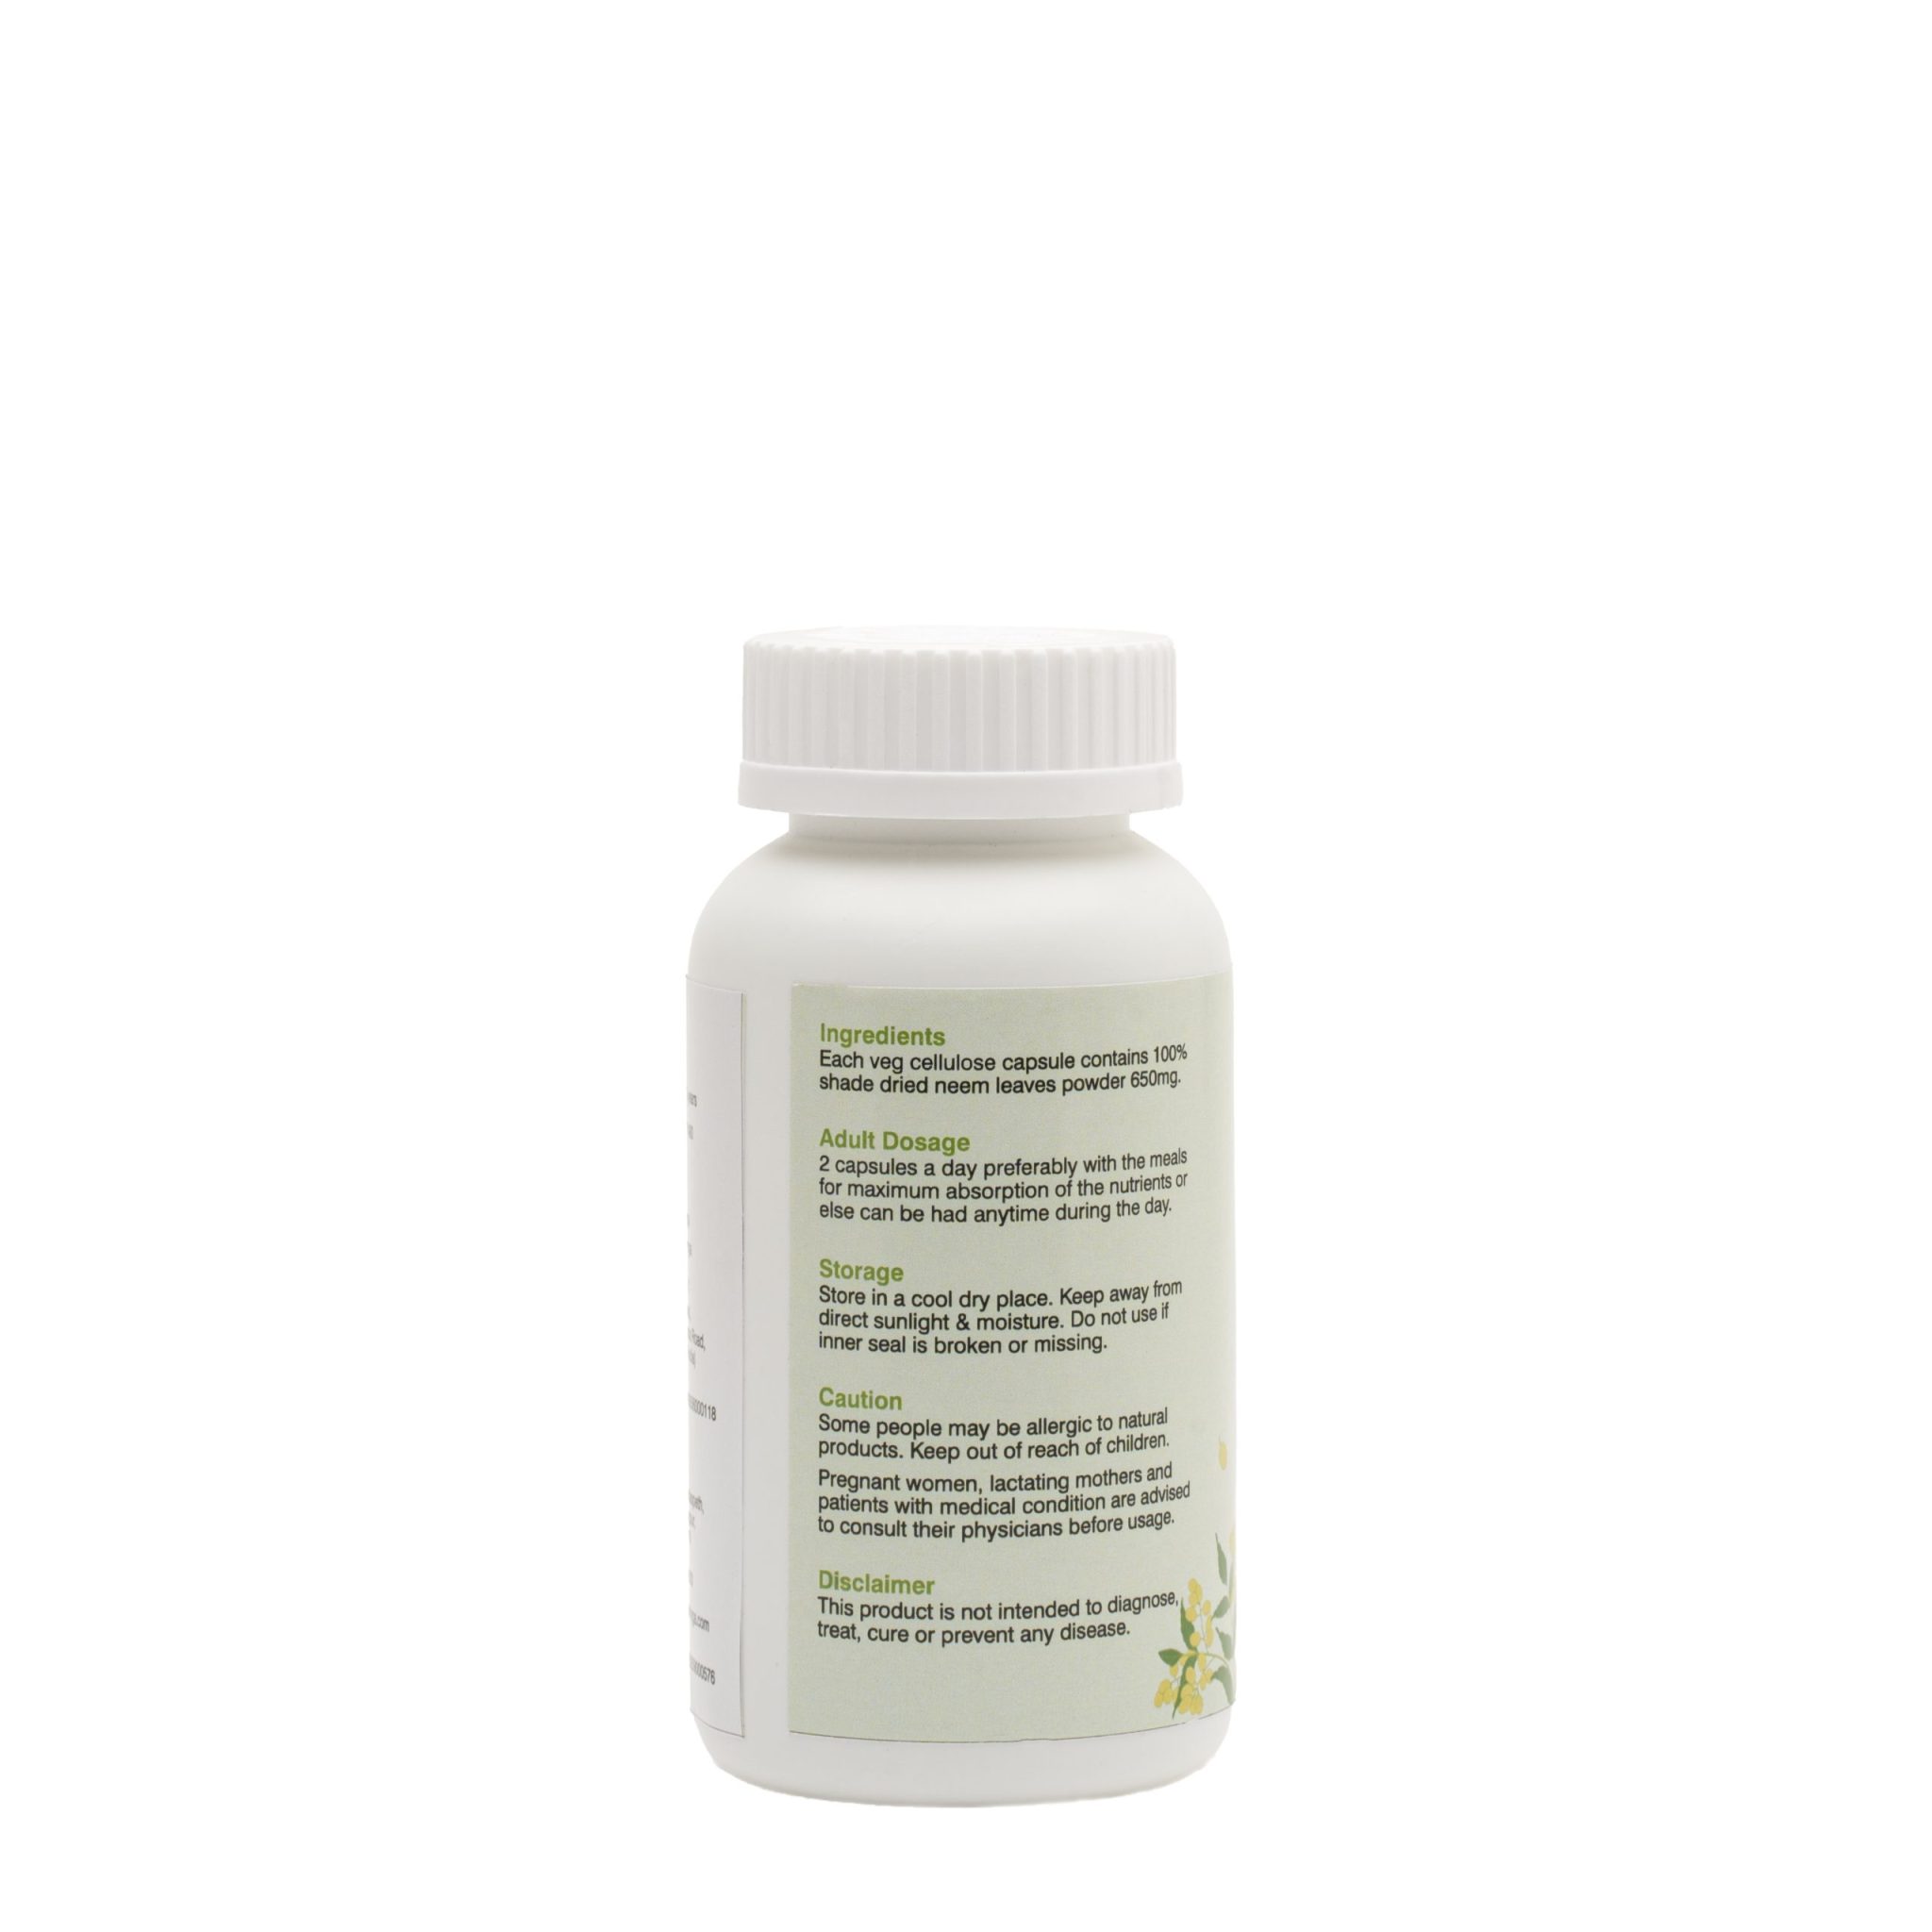 Product: Daivik Moringa Neem Veg Capsules | 100% Natural | Detox, Skin Care, Anti Inflammatory | 100 Caps Each